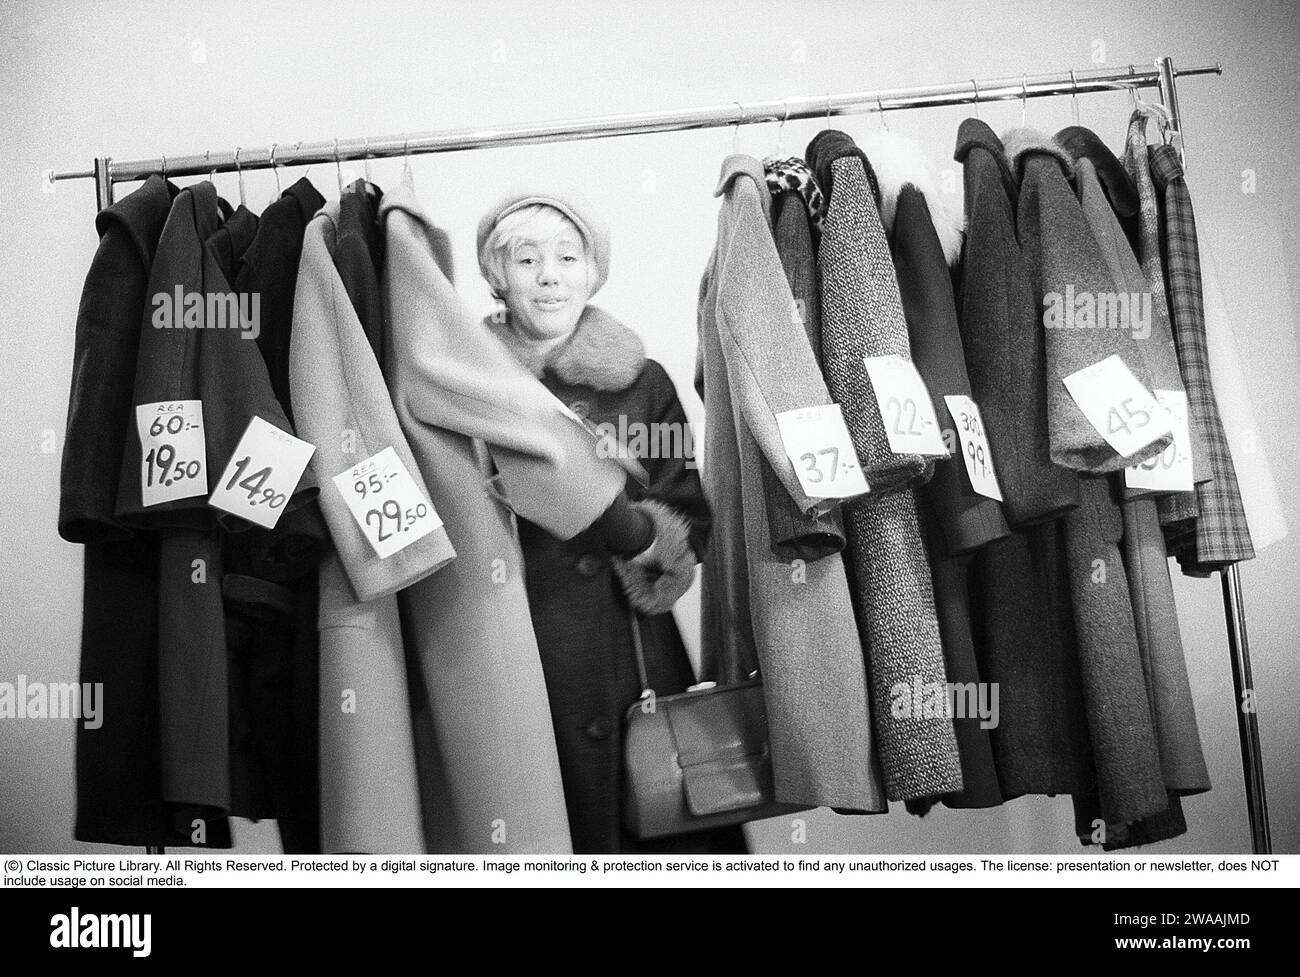 Tolle Rabatte auf Oberbekleidung in den 1960ern Eine Frau steht an einem Kleiderständer und wählt aus Oberbekleidung und Mänteln, die mit Preisschildern mit ermäßigten Preisen gekennzeichnet sind. Nach ihrem Gesicht zu urteilen, schätzt sie die reduzierten Preise und denkt, sie bekommt echte Schnäppchen. Schweden Januar 1963. Ref. CV28 Stockfoto